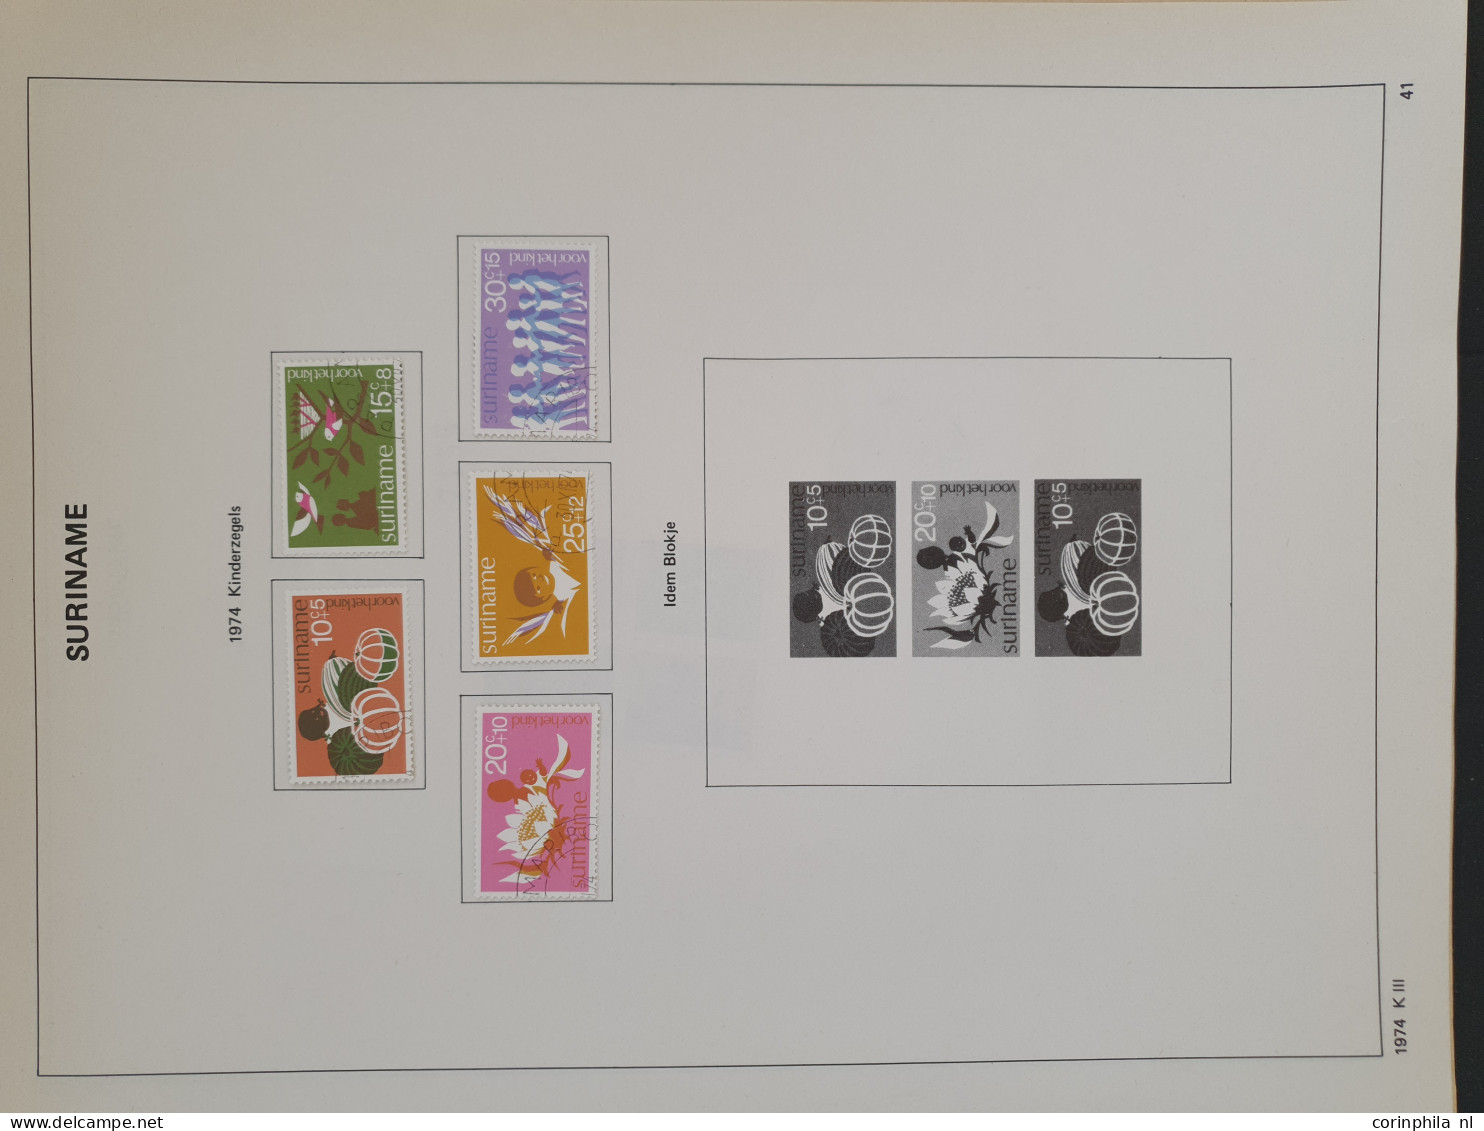 1864-1974, gestempelde collectie met betere ex. en series in Unie album